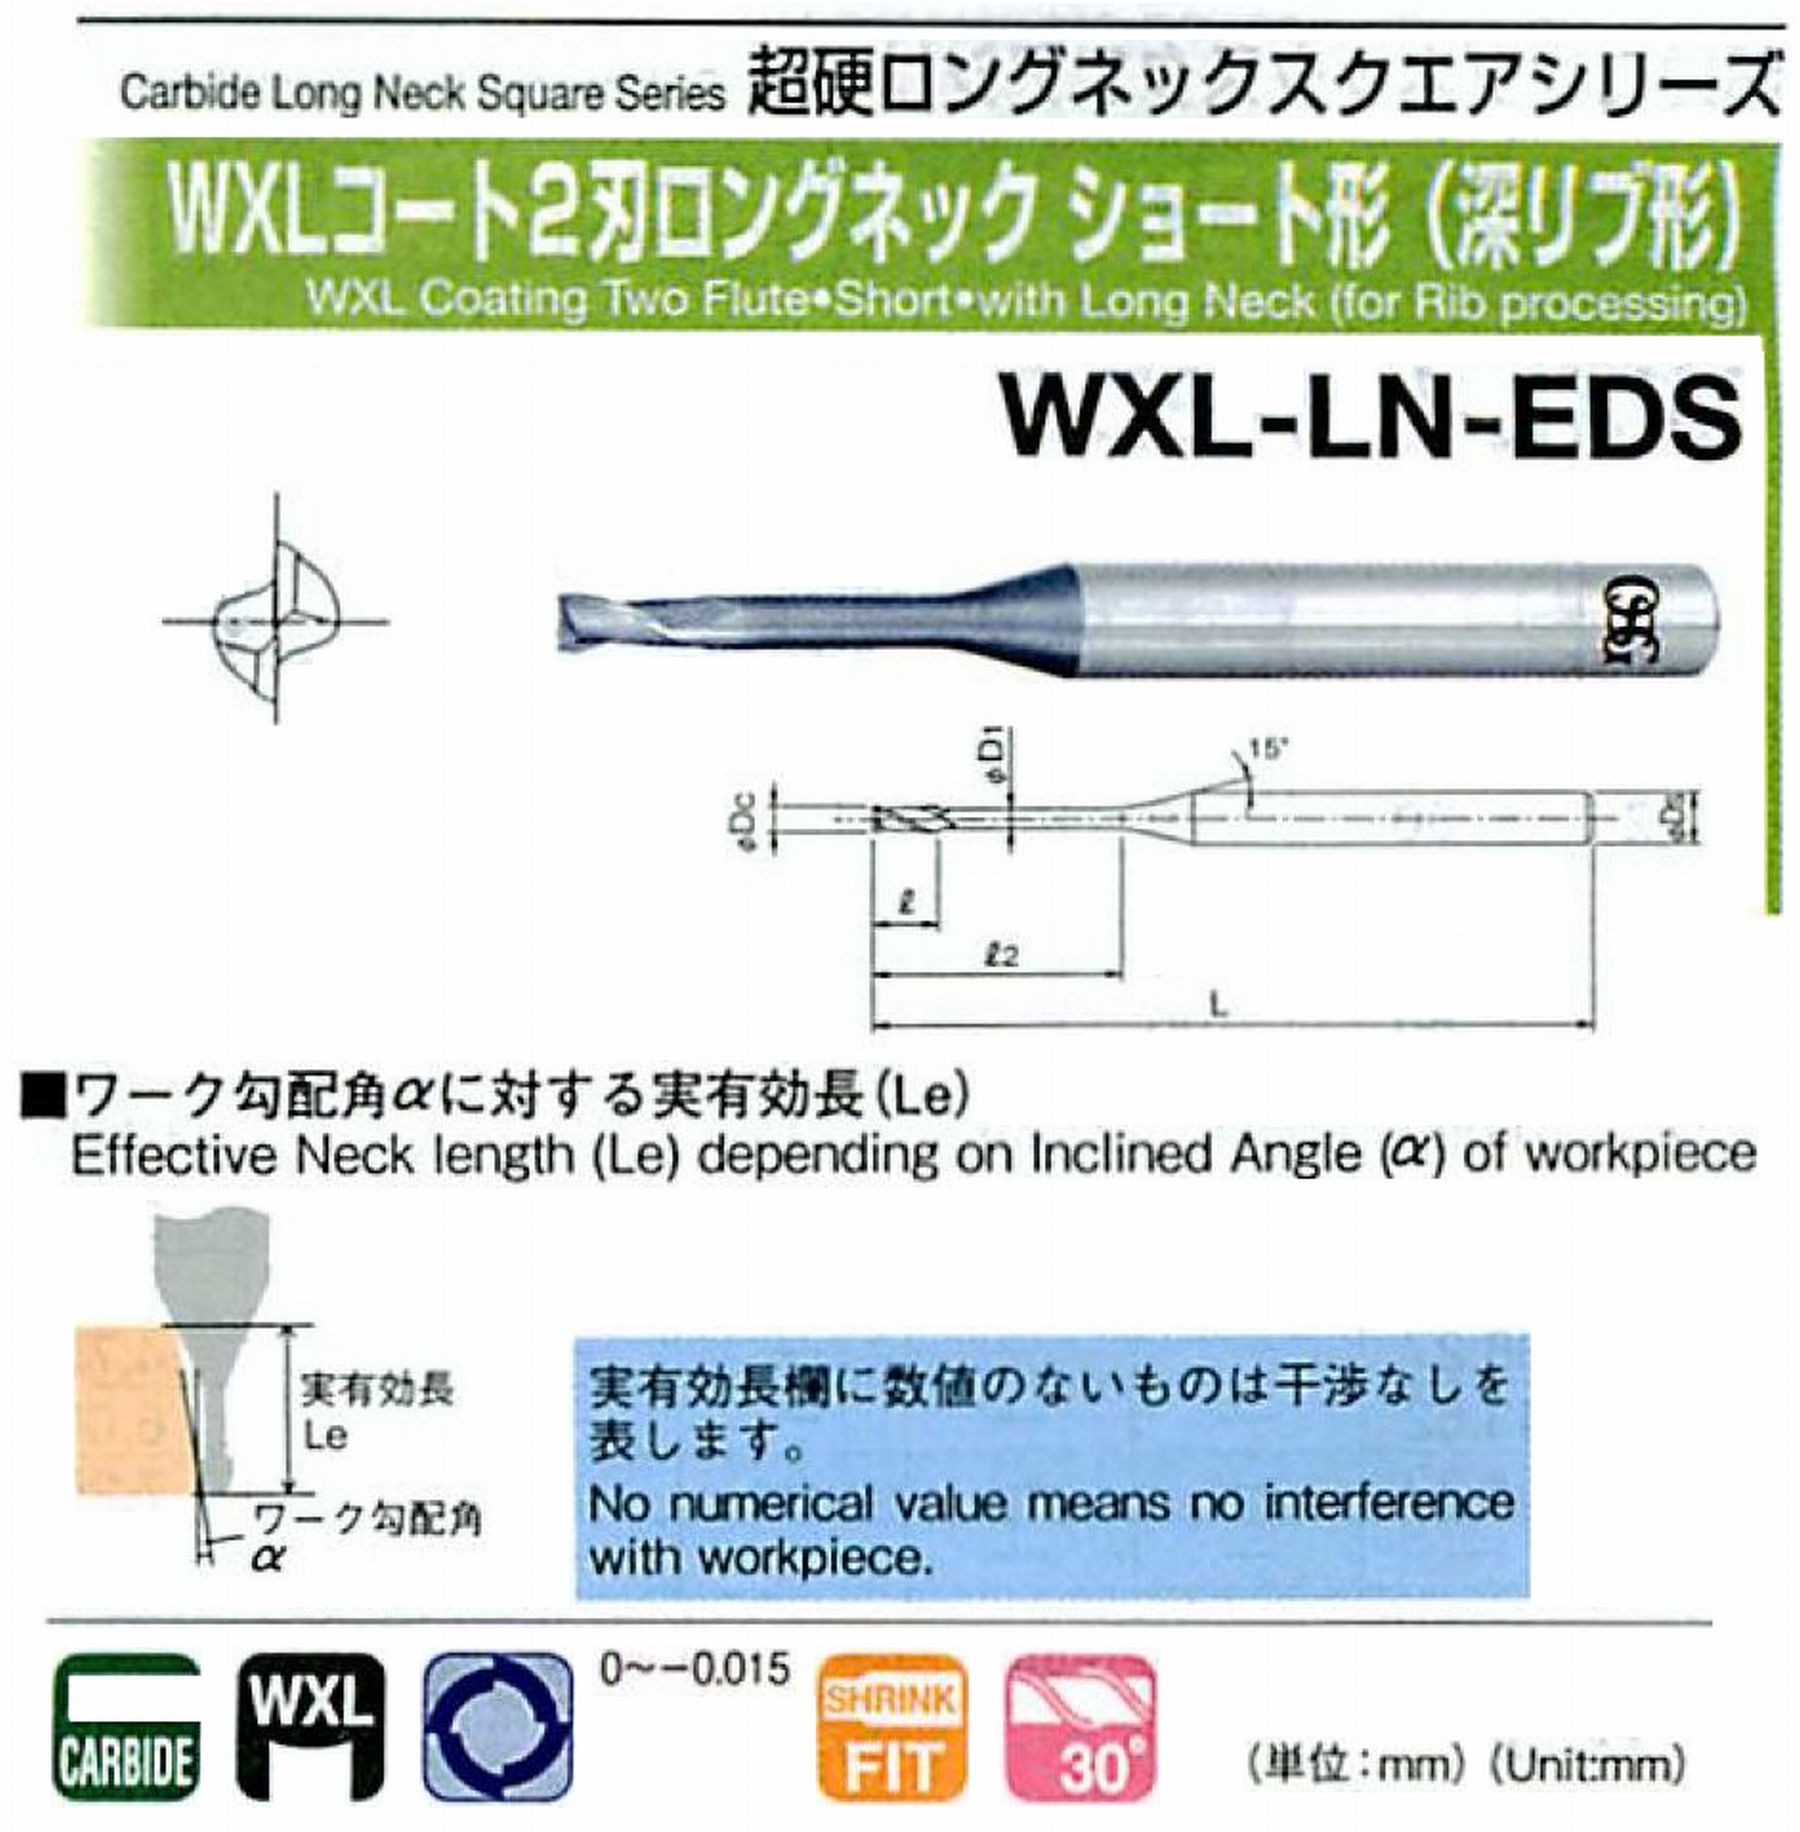 オーエスジー/OSG WXLコート2刃 ロングネックショート形(深リブ形) WXL-LN-EDS 外径×首下長1×12 全長45 刃長1.5 シャンク径4mm 首径0.95